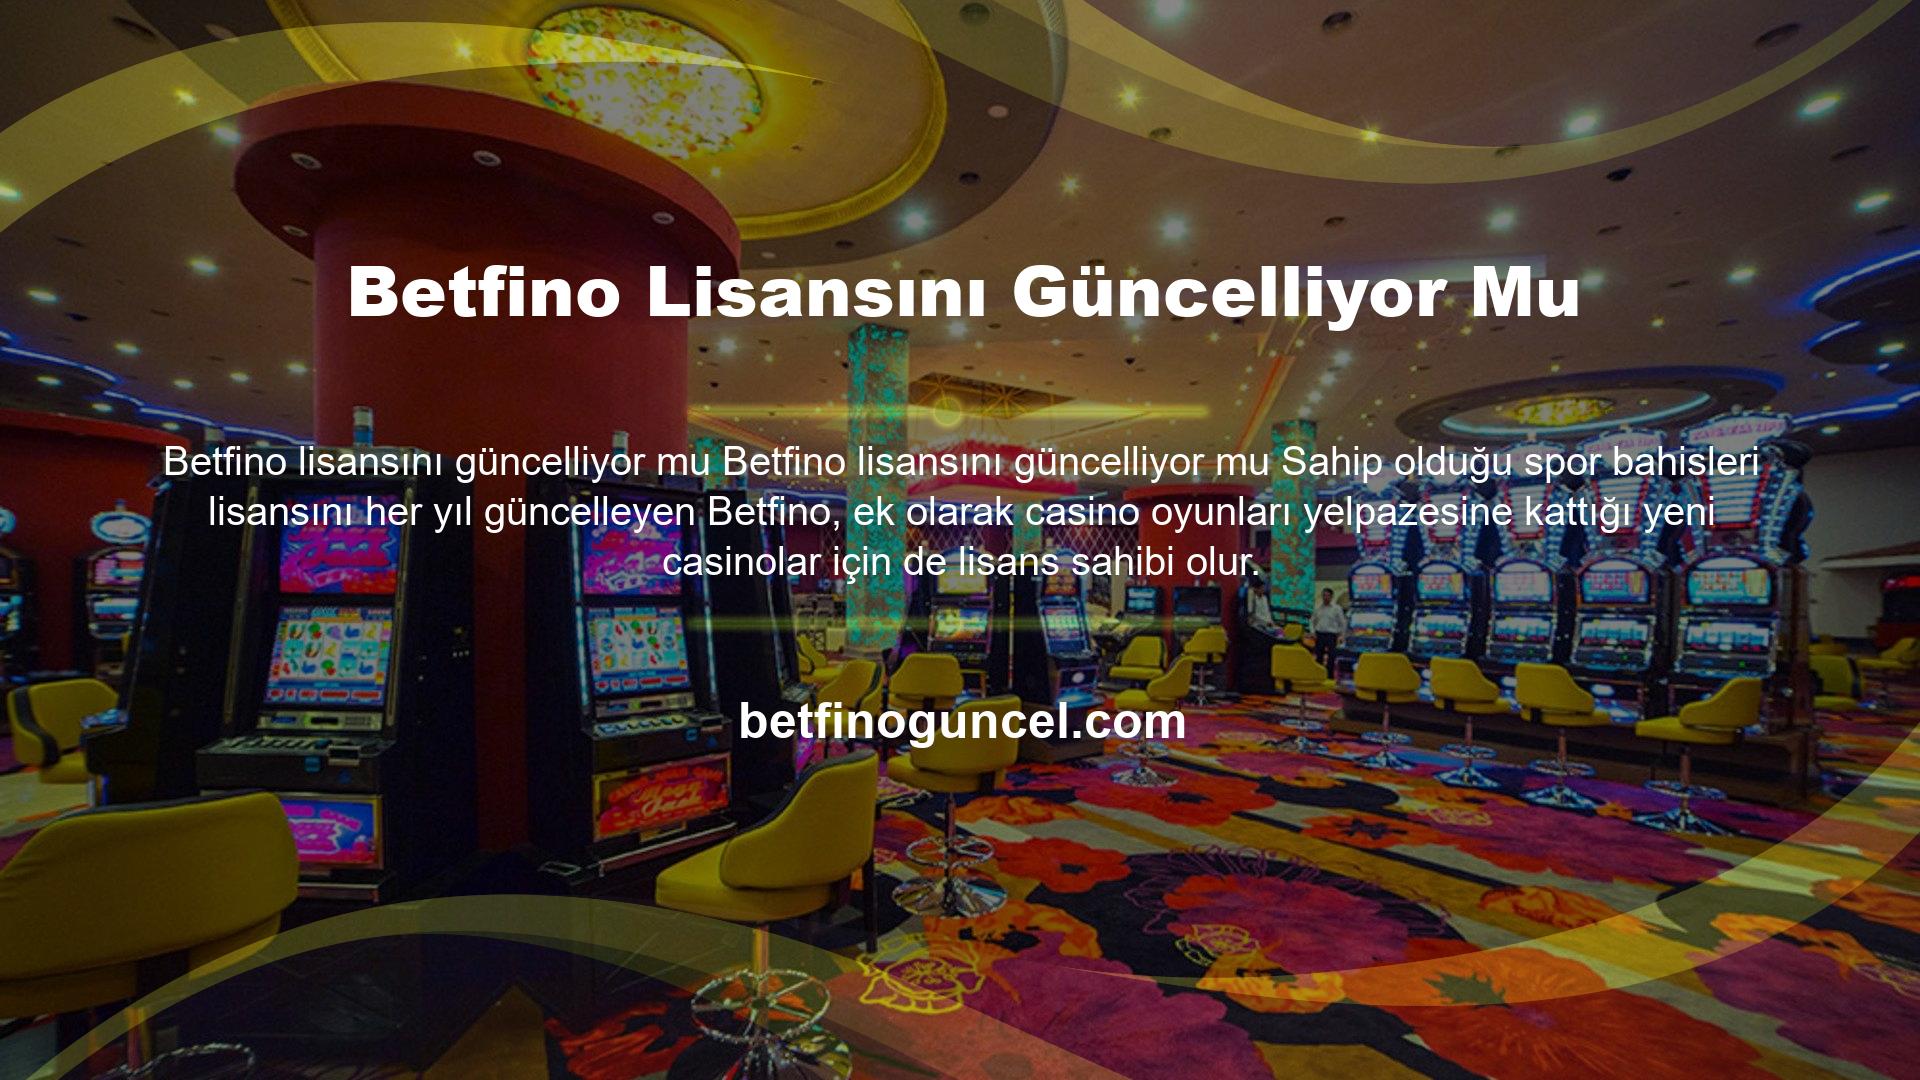 Betfino bütün lisansları daha günü gelmeden yenilenir ve casino severlere benzersiz bir deneyim sunulmaya devam eder